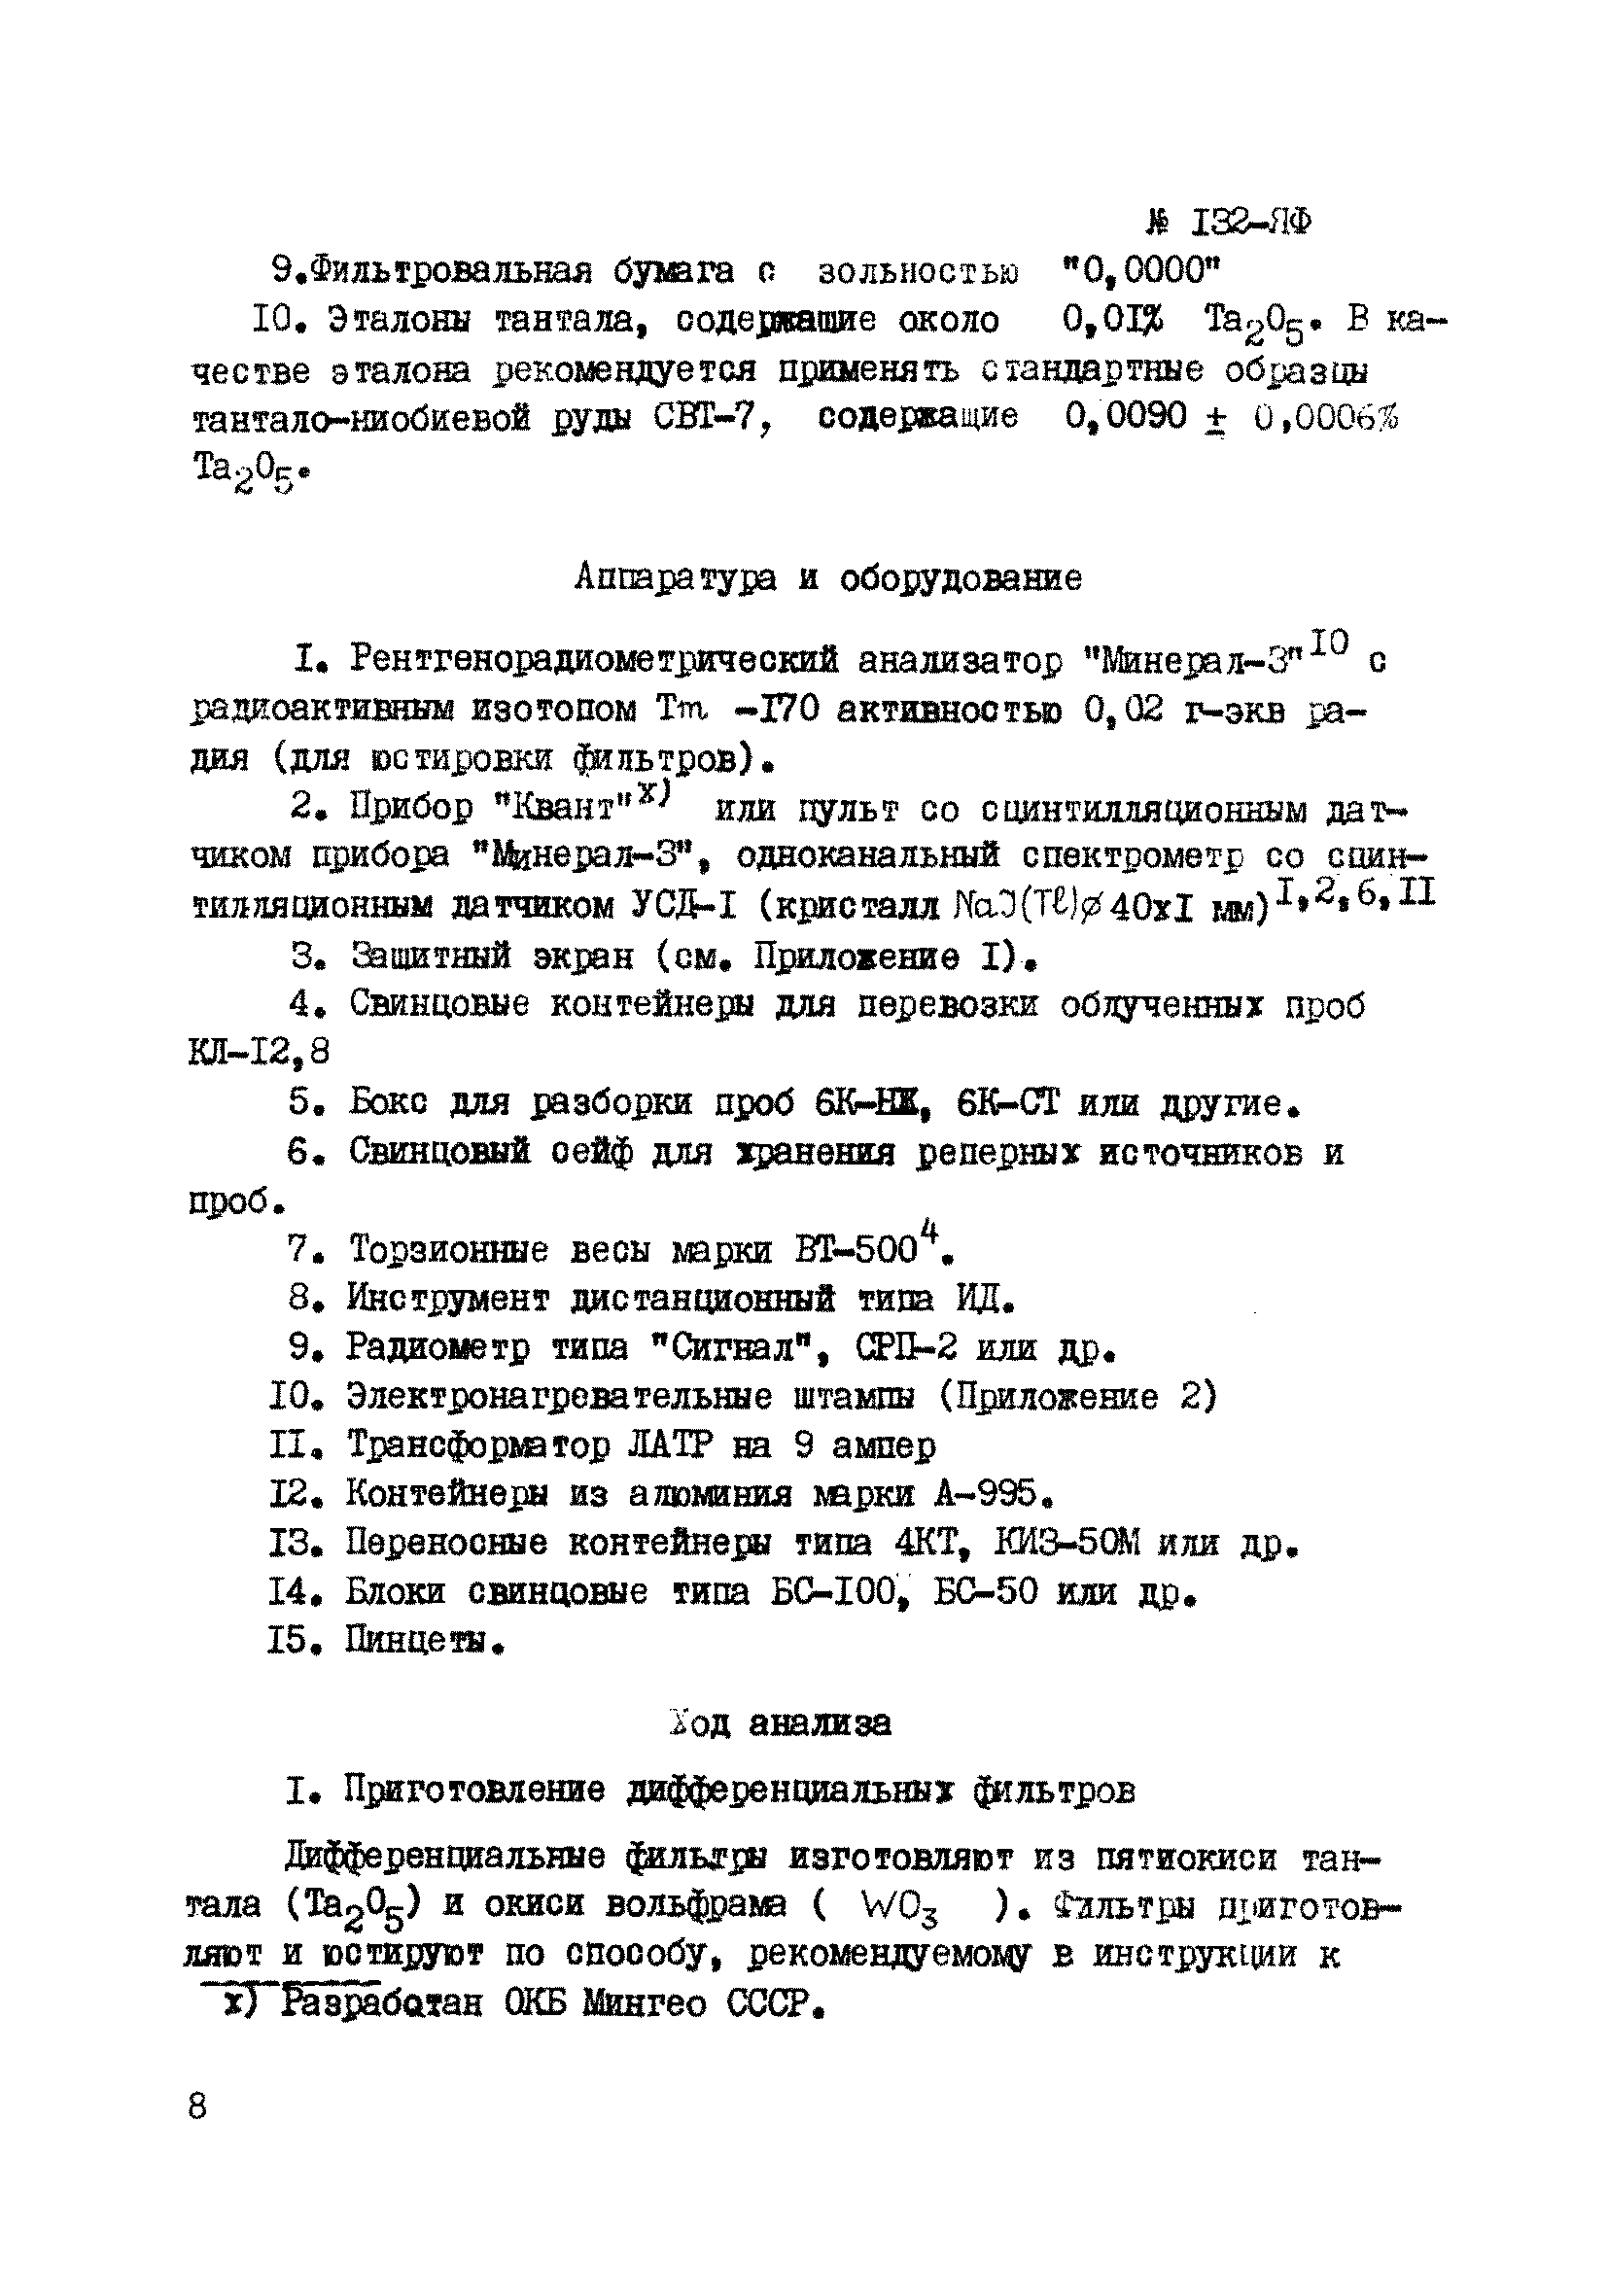 Инструкция НСАМ 132-ЯФ